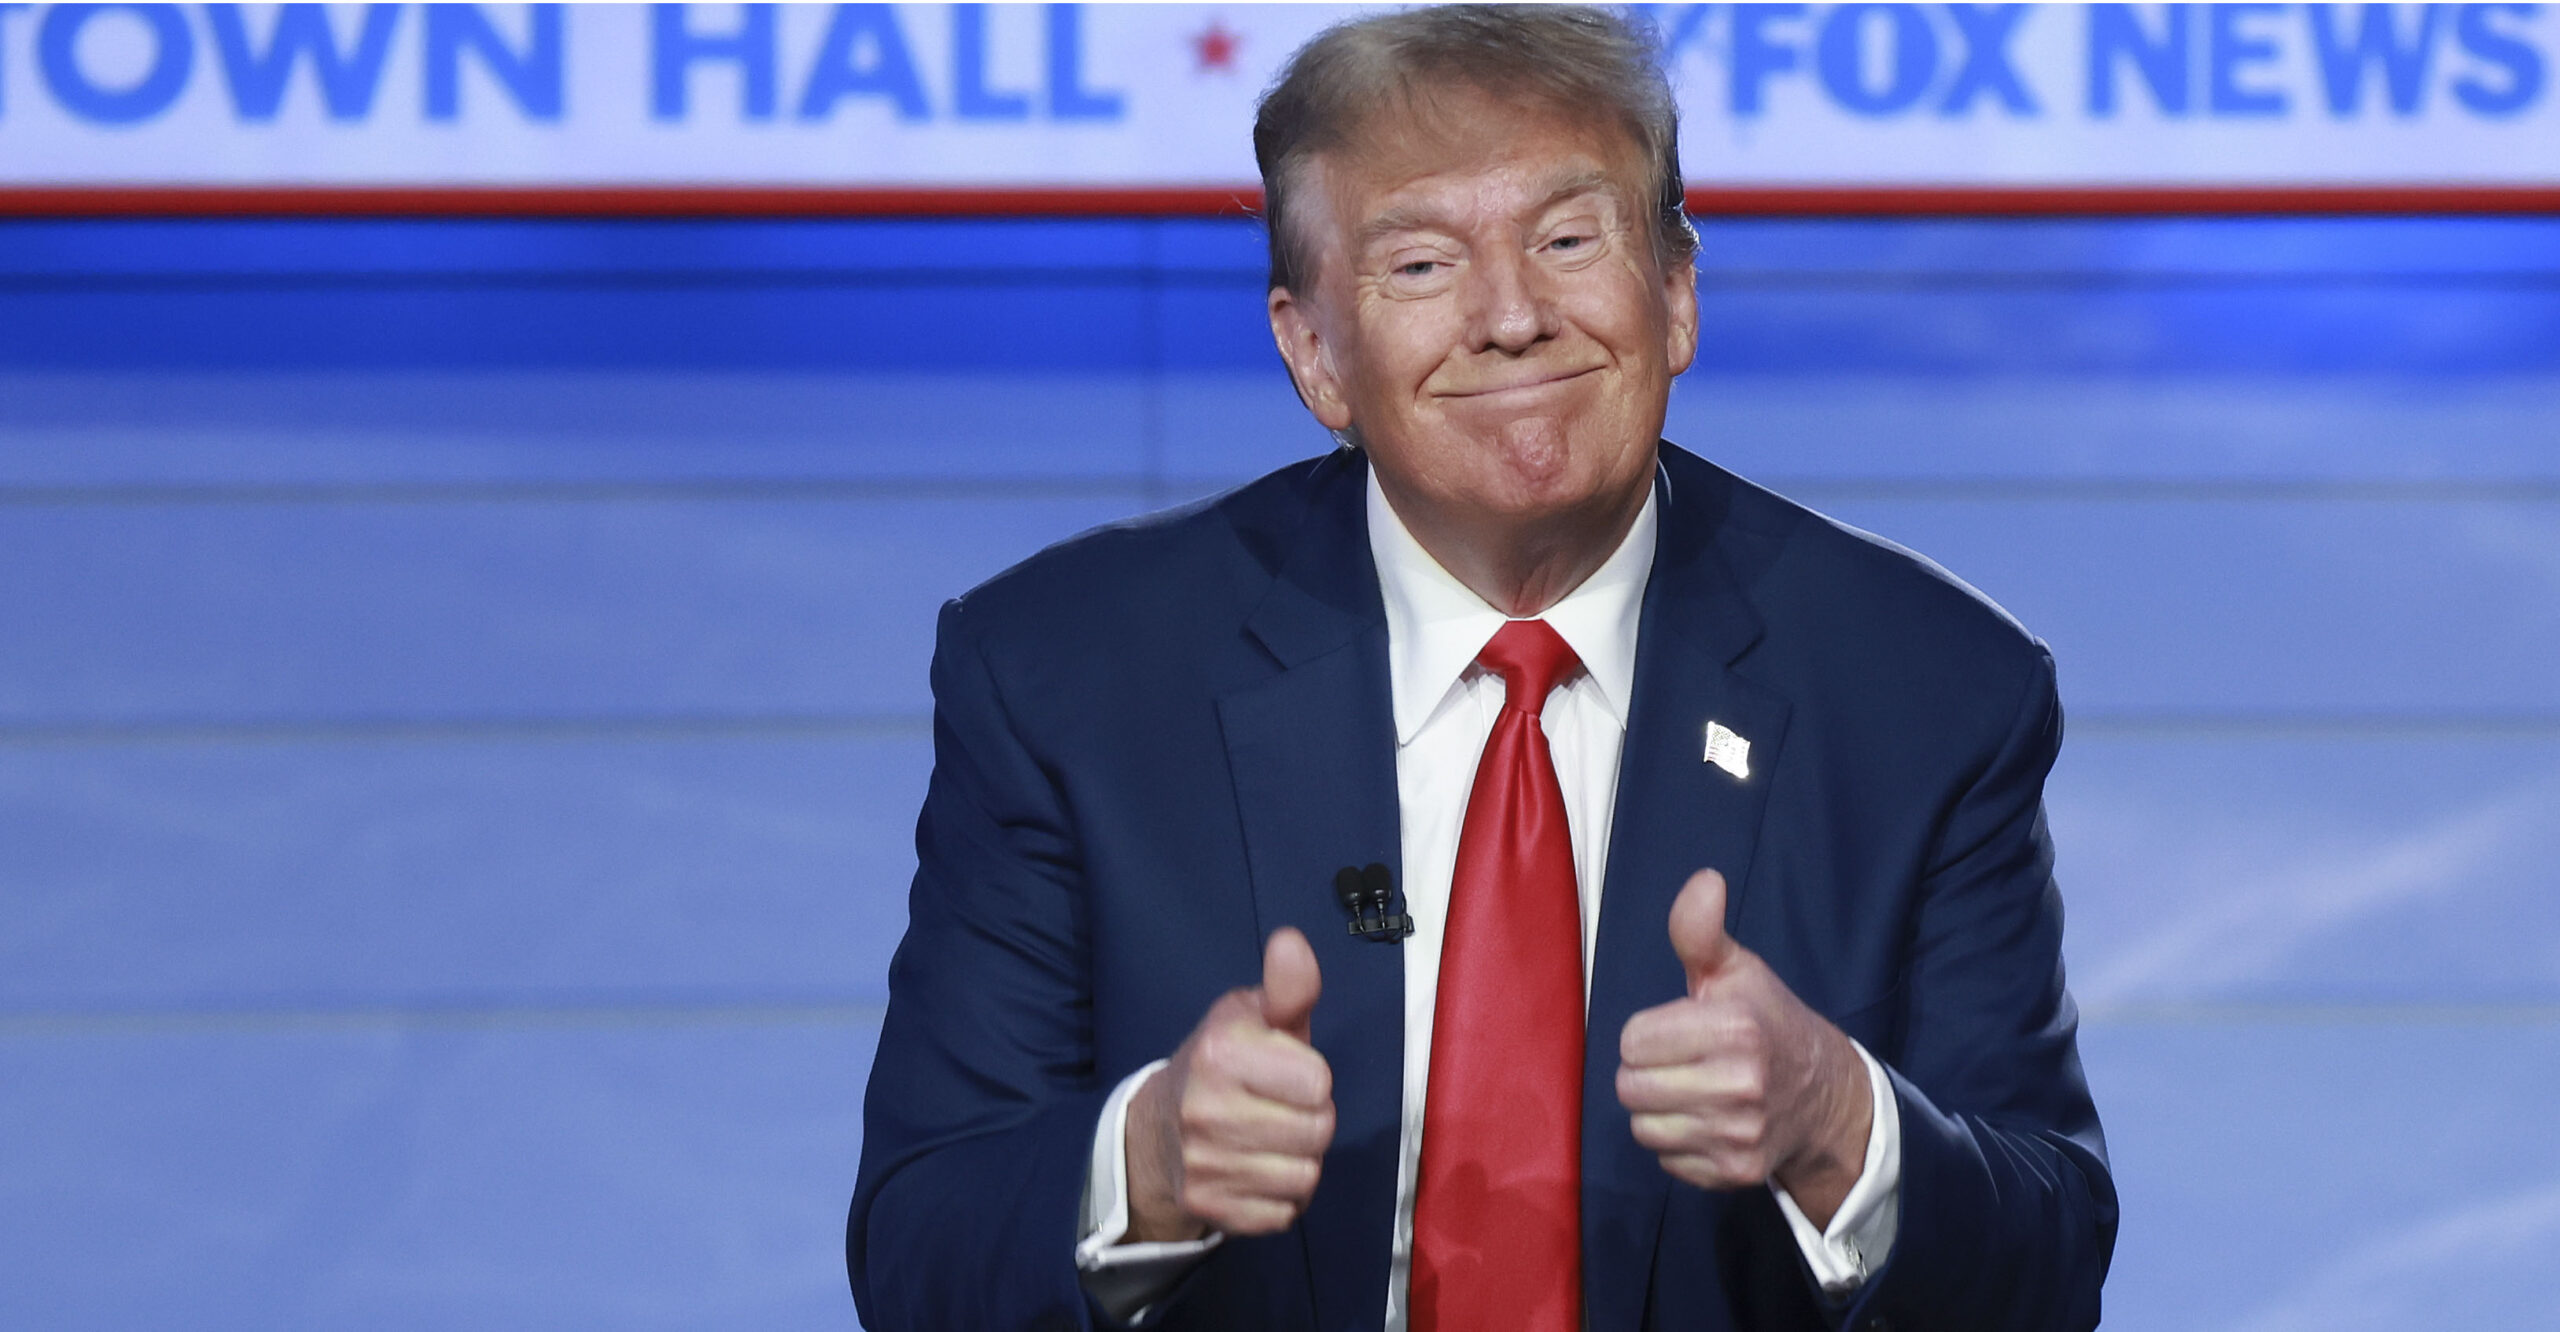 6 Top Takeaways From Trump’s Debate-Skipping Town Hall